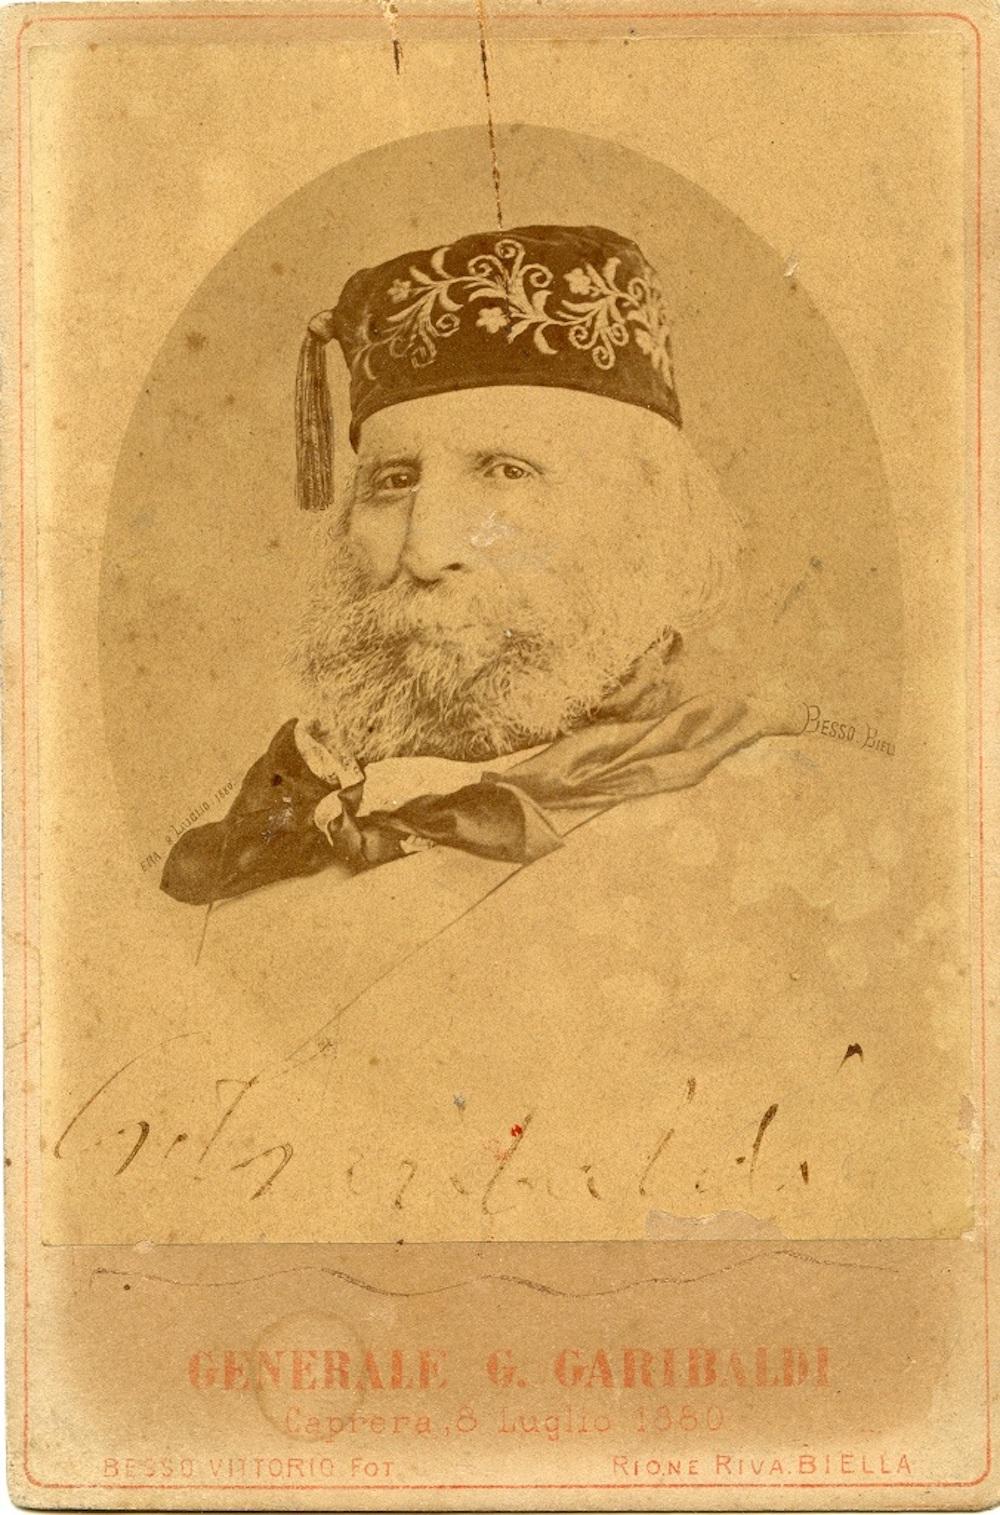 Unknown Black and White Photograph – Autographisches Porträt und Ehering von Giuseppe Garibaldi - 1880er Jahre